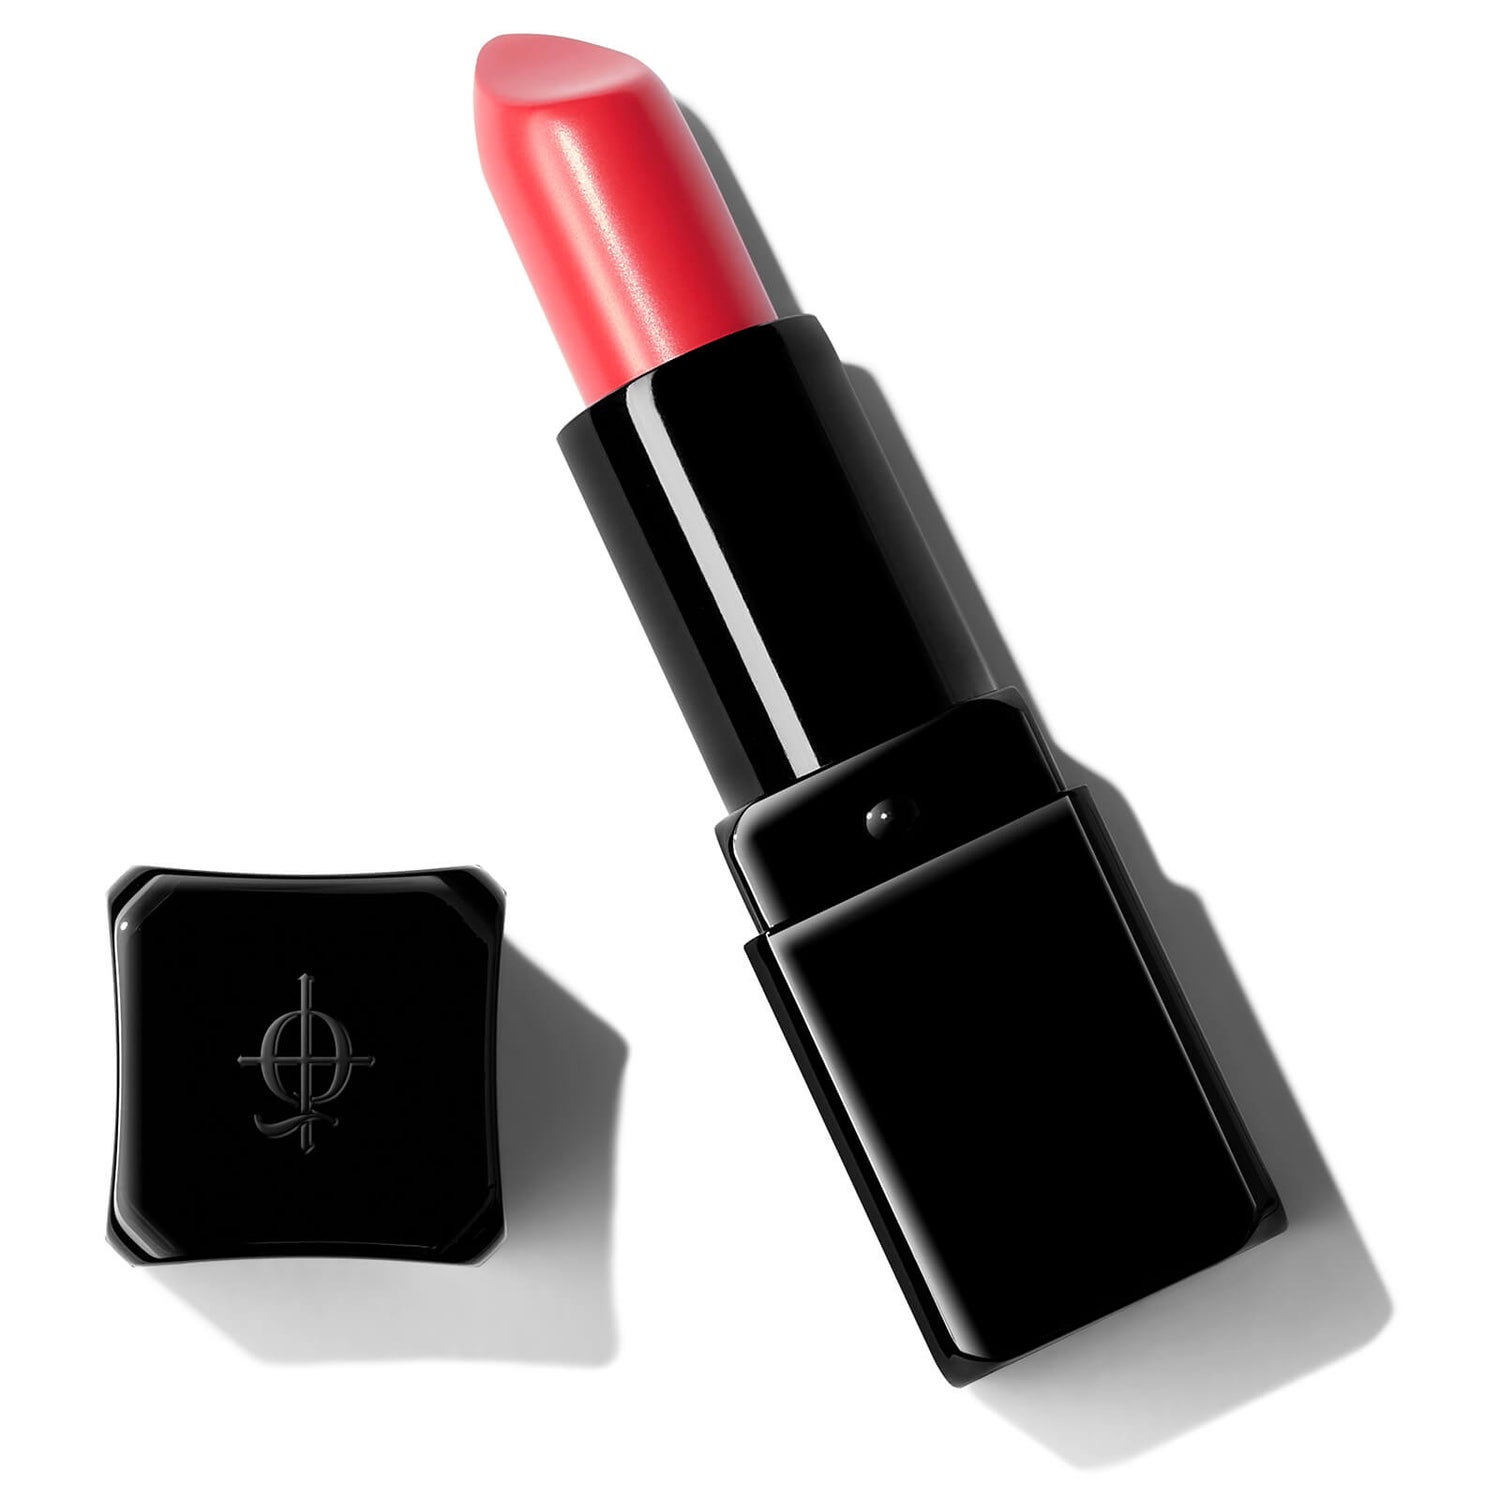 Illamasqua Antimatter Lipstick (forskellige nuancer)